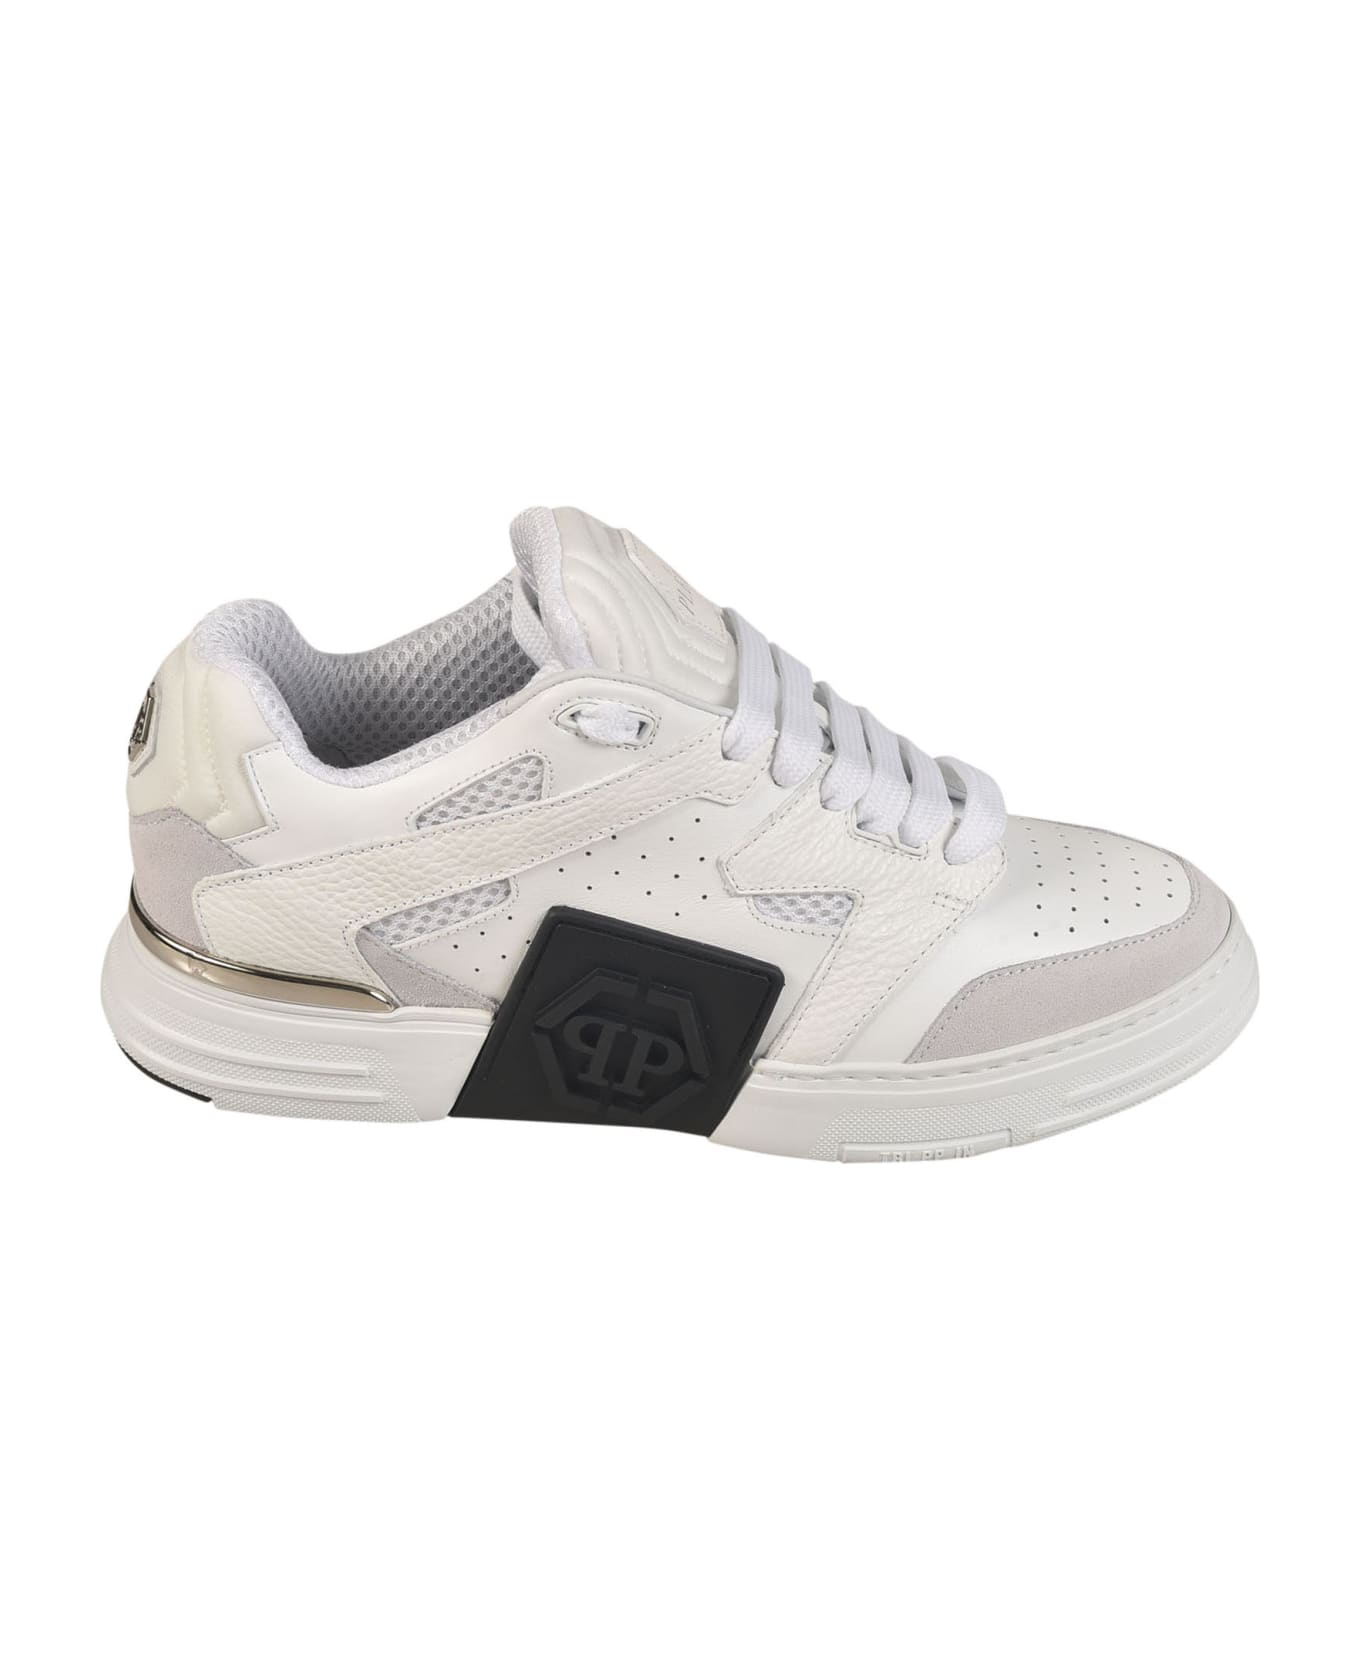 Philipp Plein Mix Leather Sneakers - White